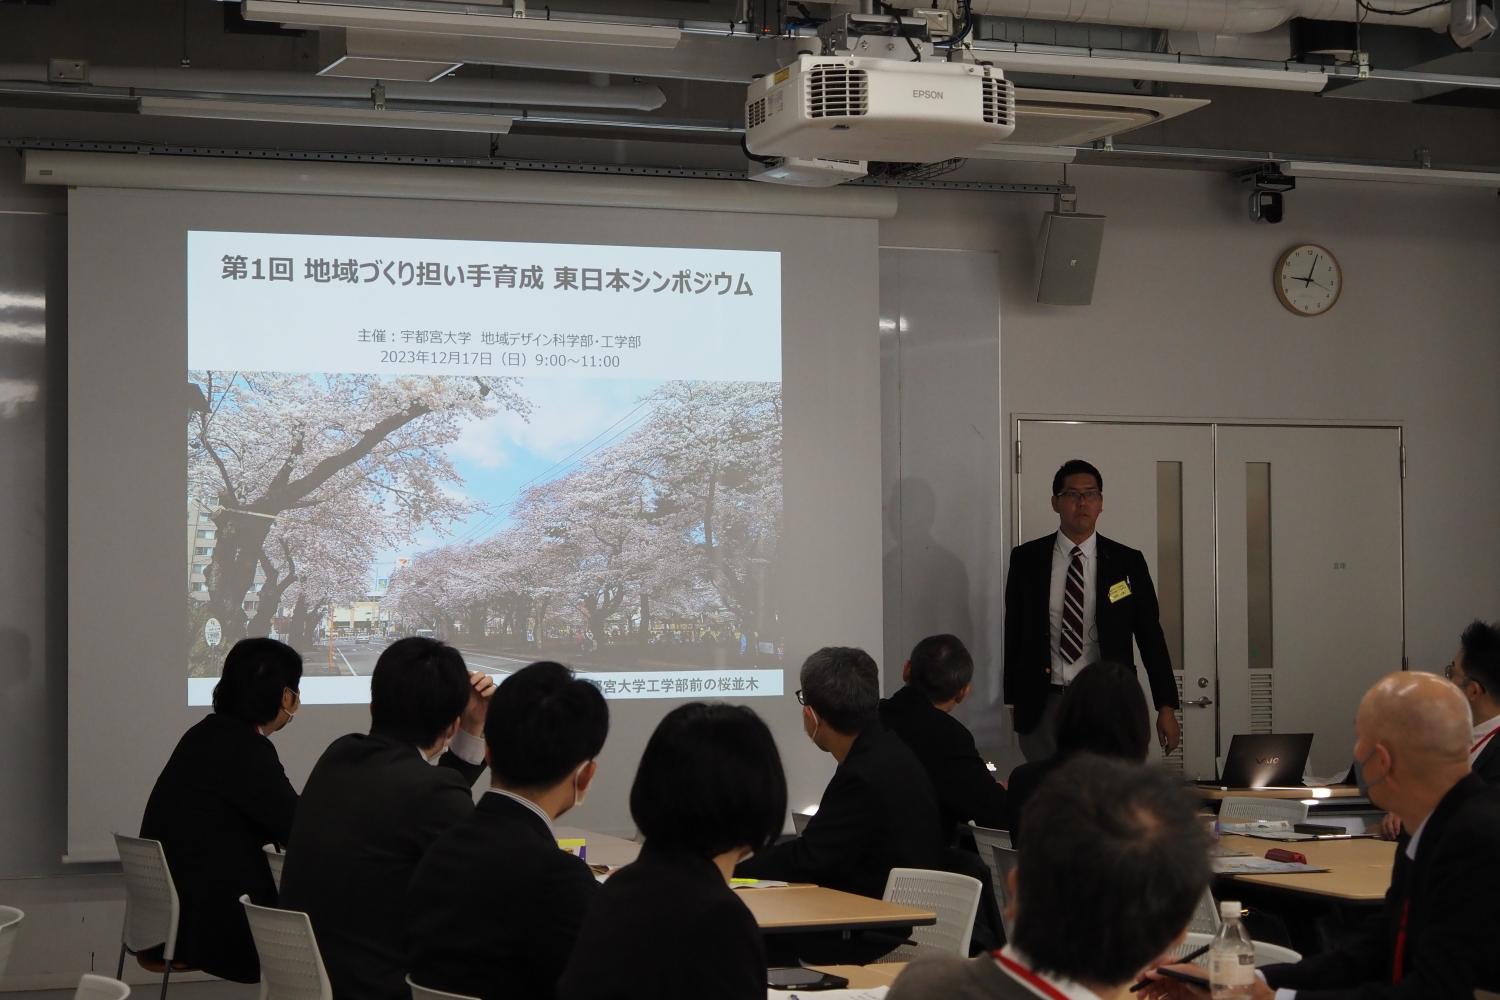  「第１回地域づくり担い手育成東日本シンポジウム」を開催しました